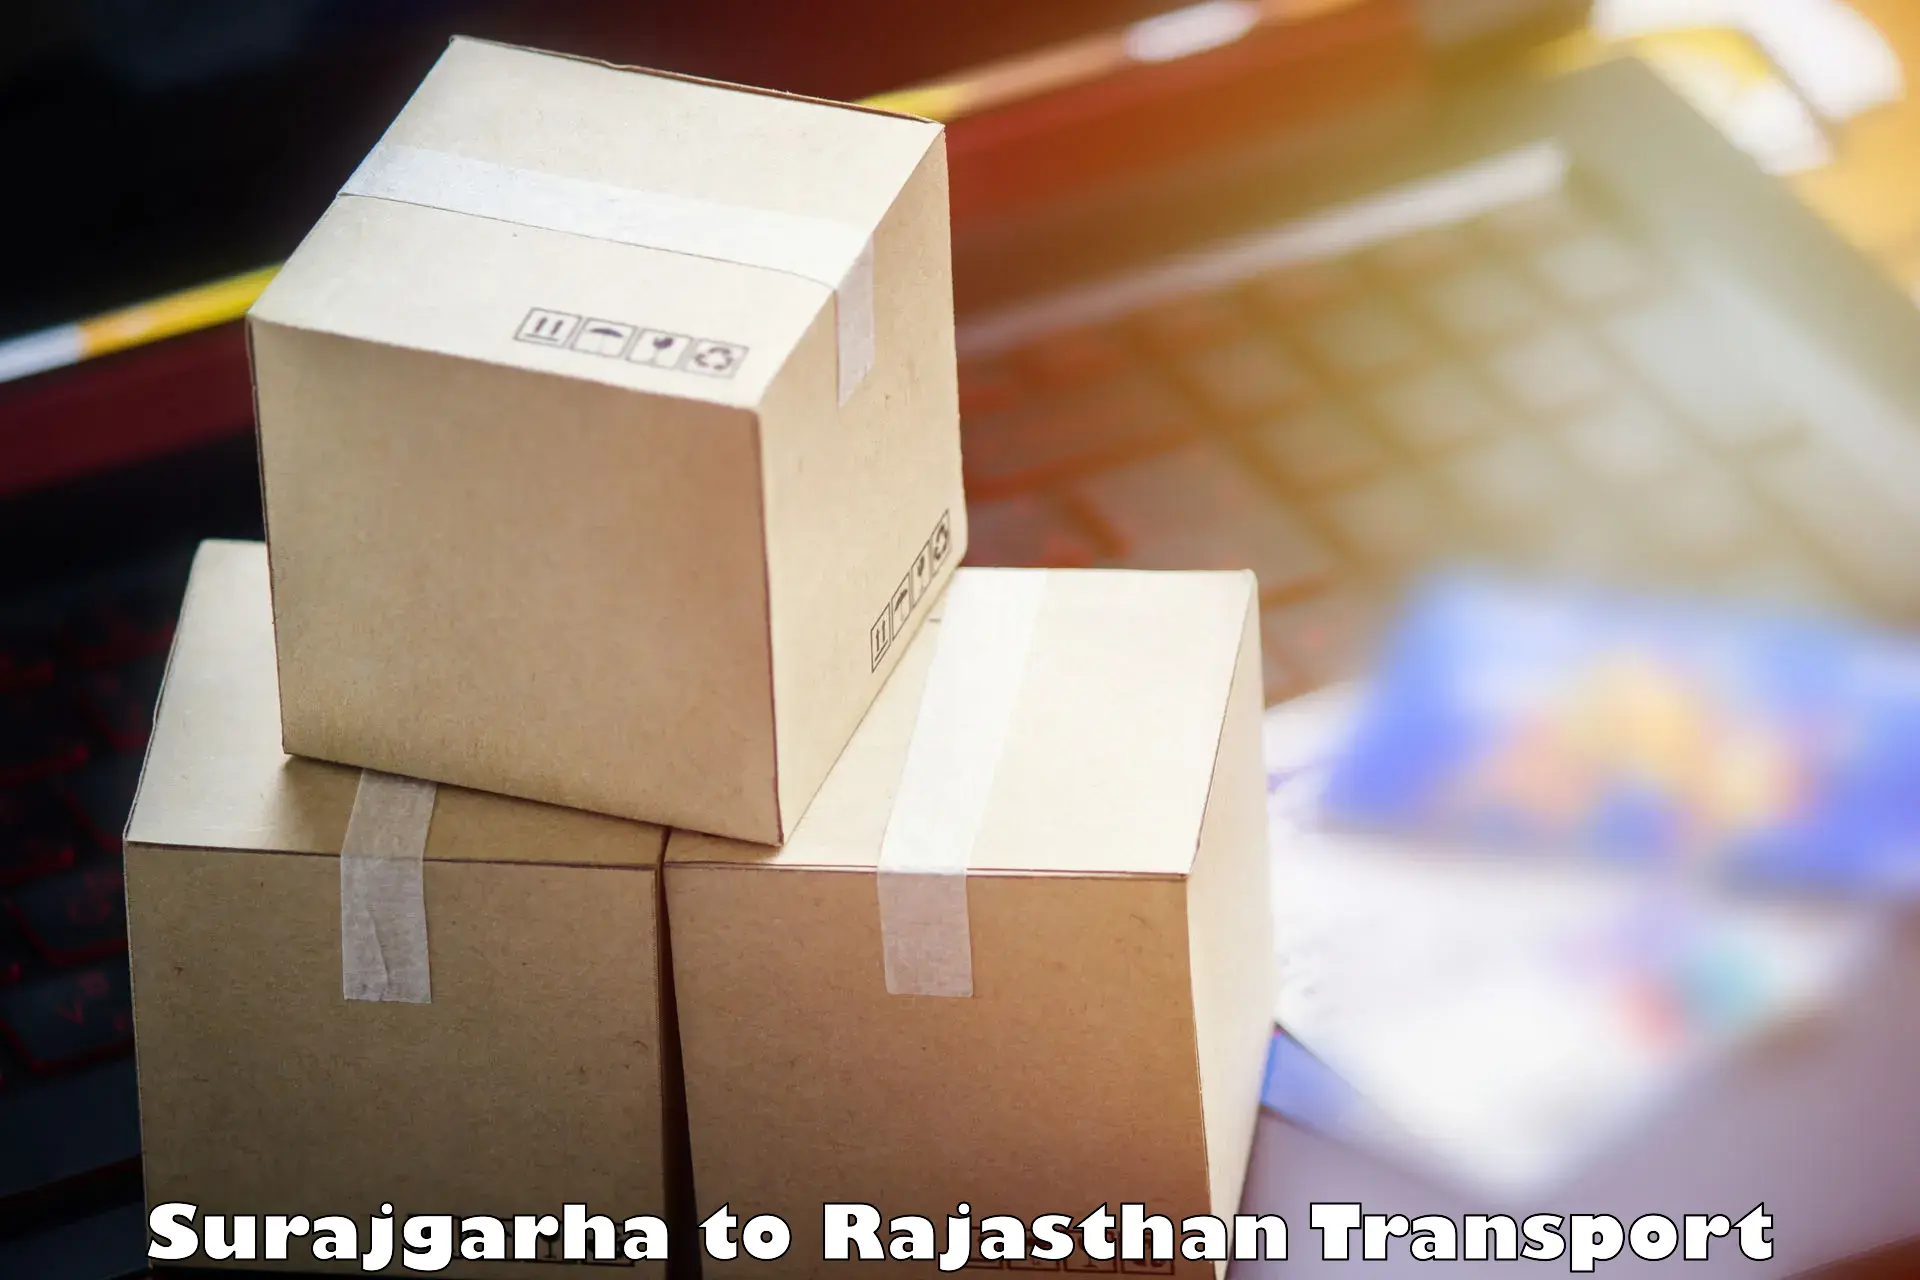 Furniture transport service Surajgarha to Nagaur